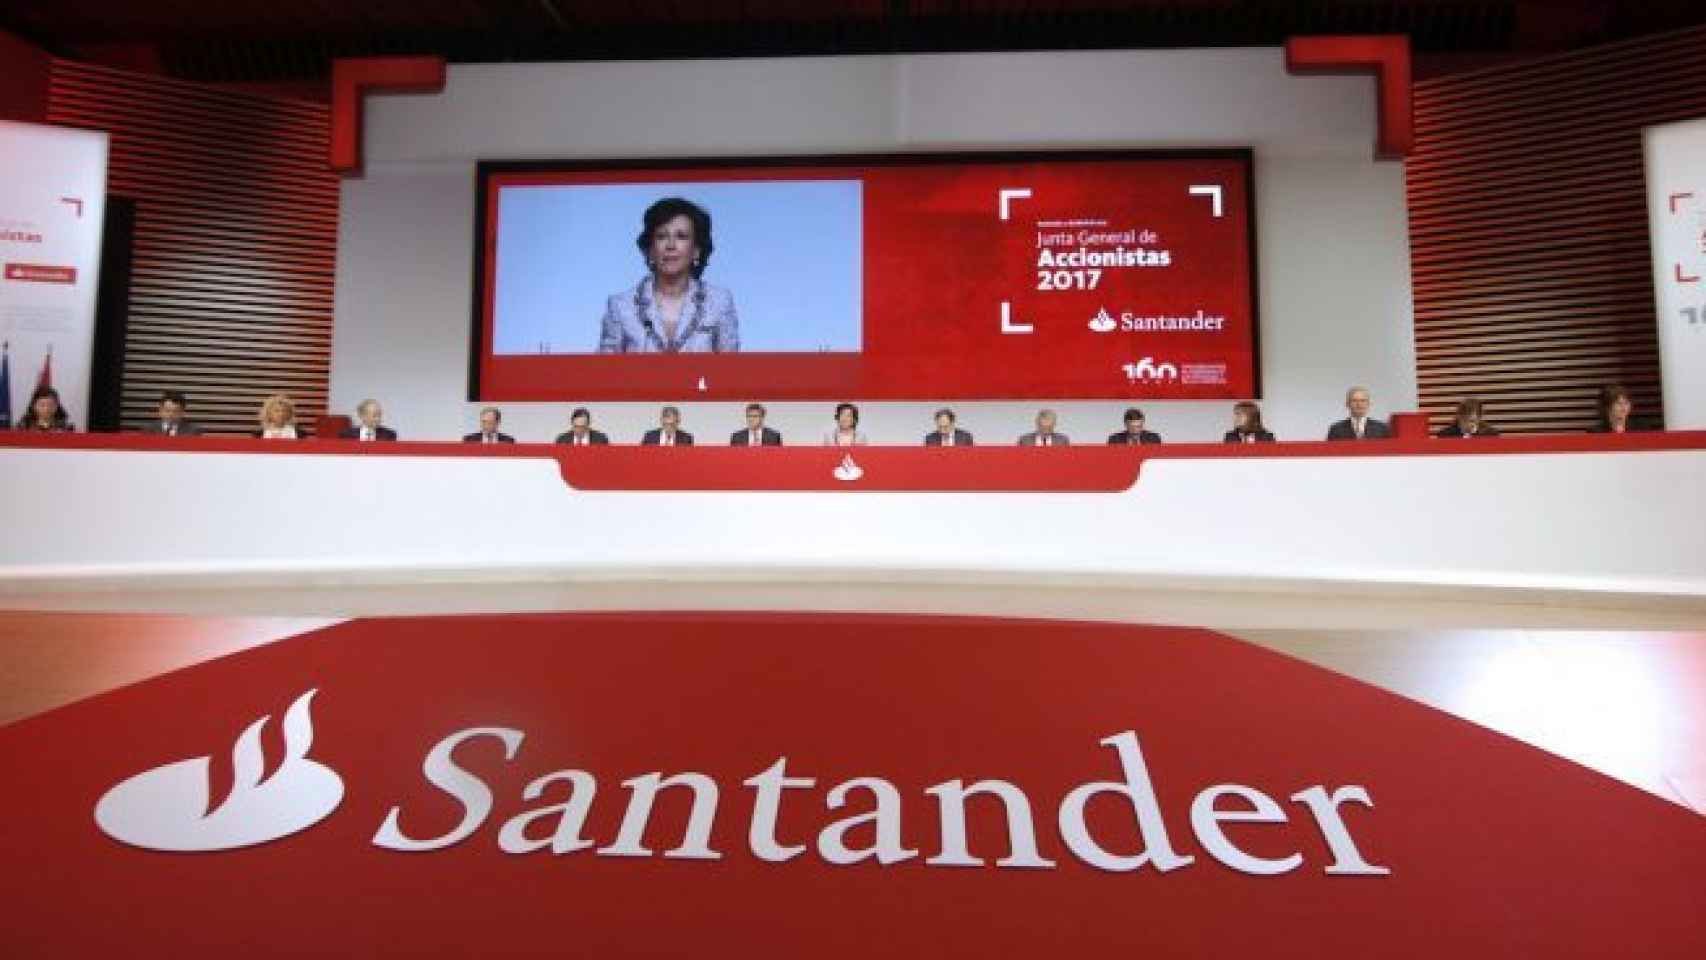 Junta General de Accionistas del Santander.